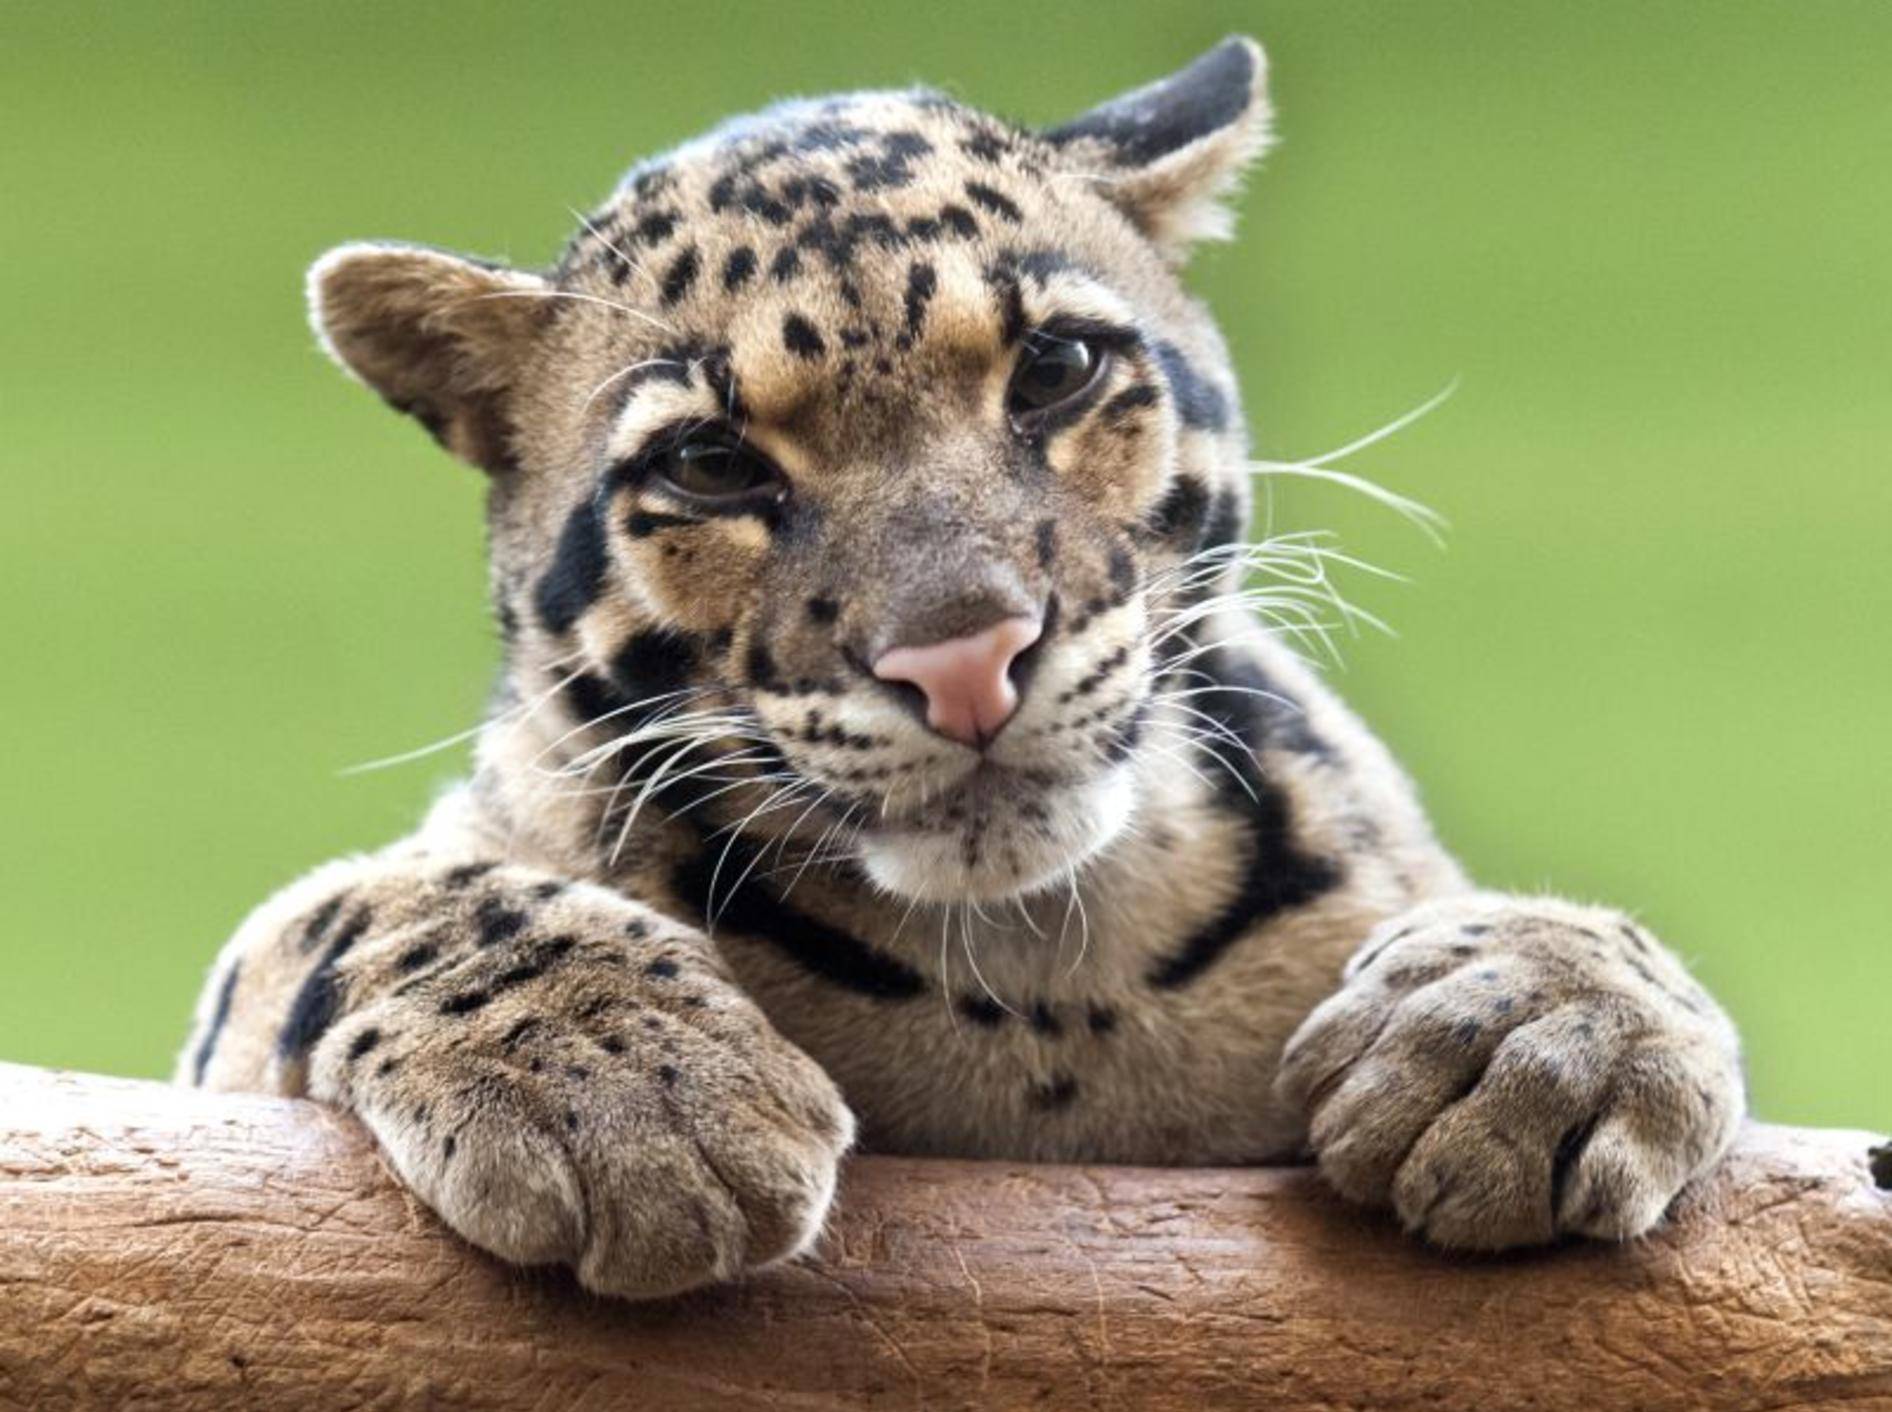 Der Nebelparder: Ein bildhübsches Tier mit Ähnlichkeit zum Leoparden – Bild: Shutterstock / Nazzu